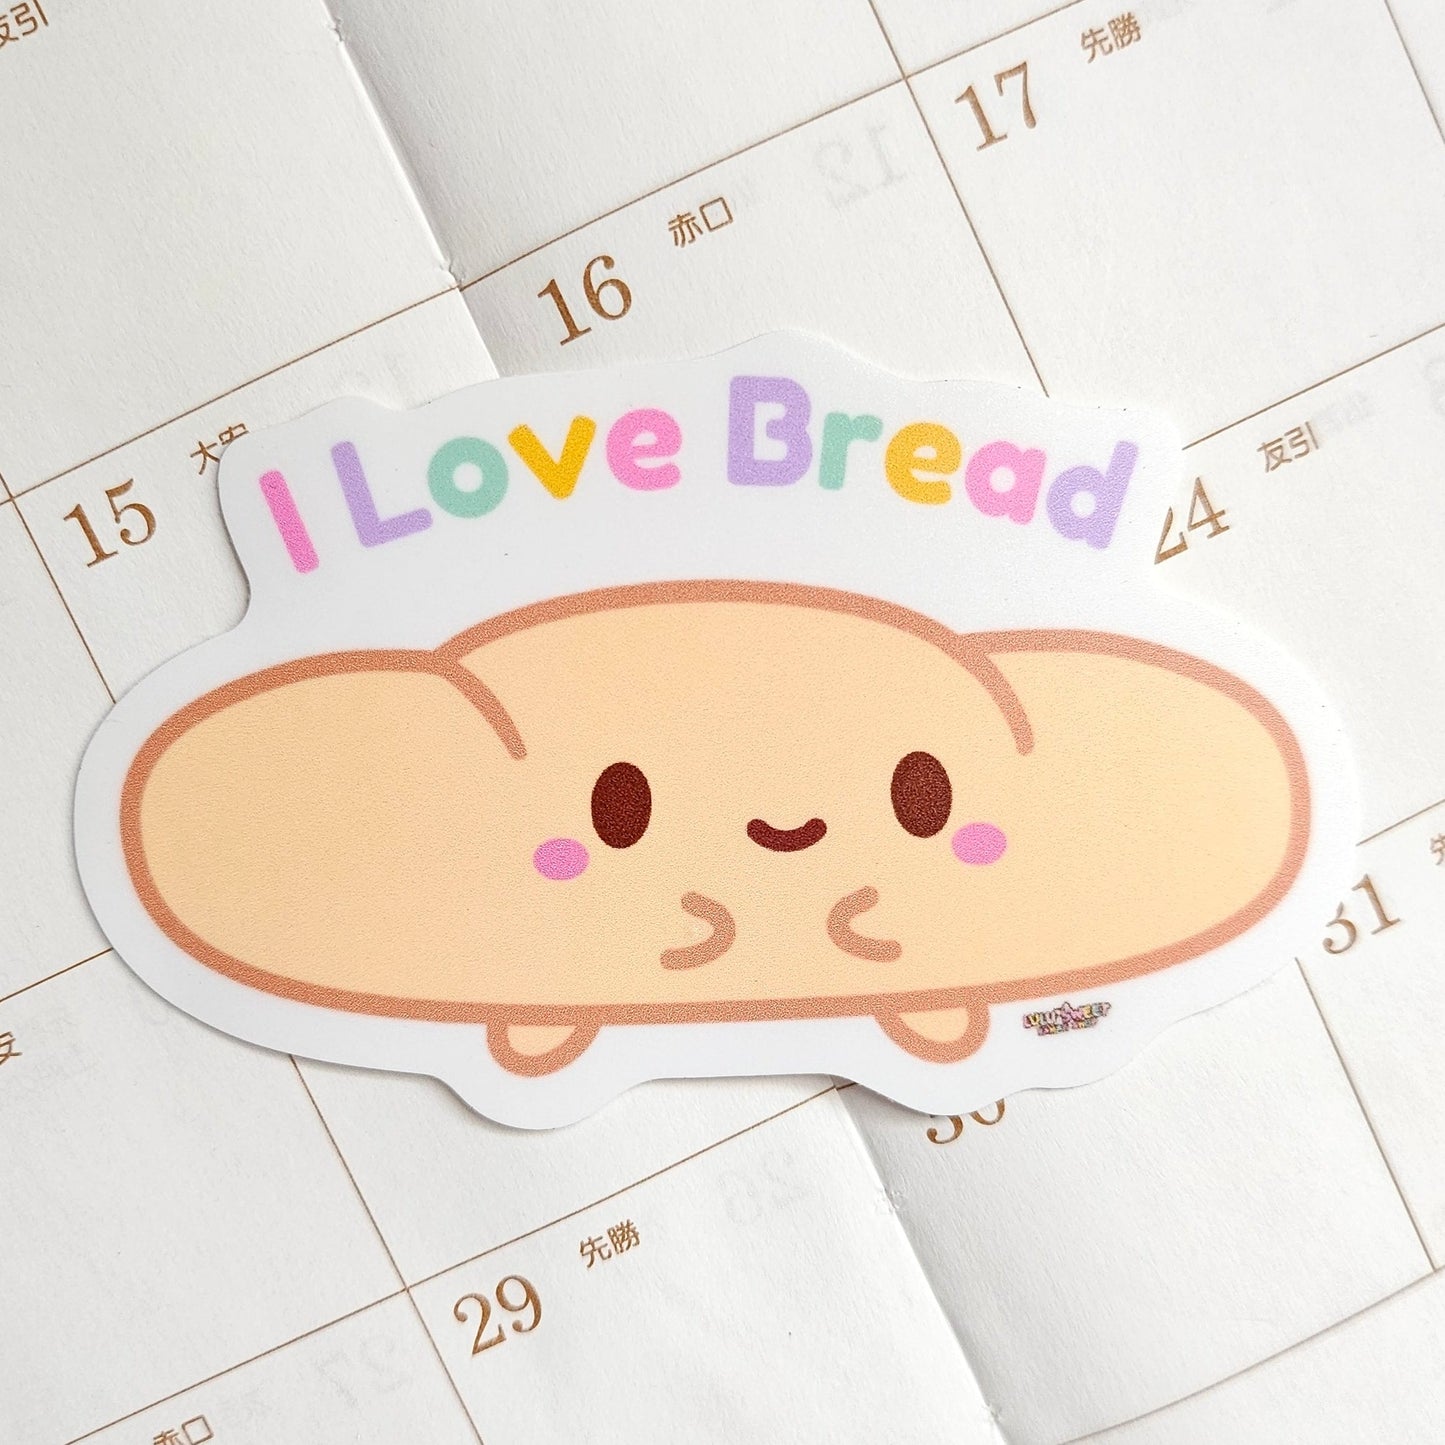 I Love Bread Kawaii Sticker